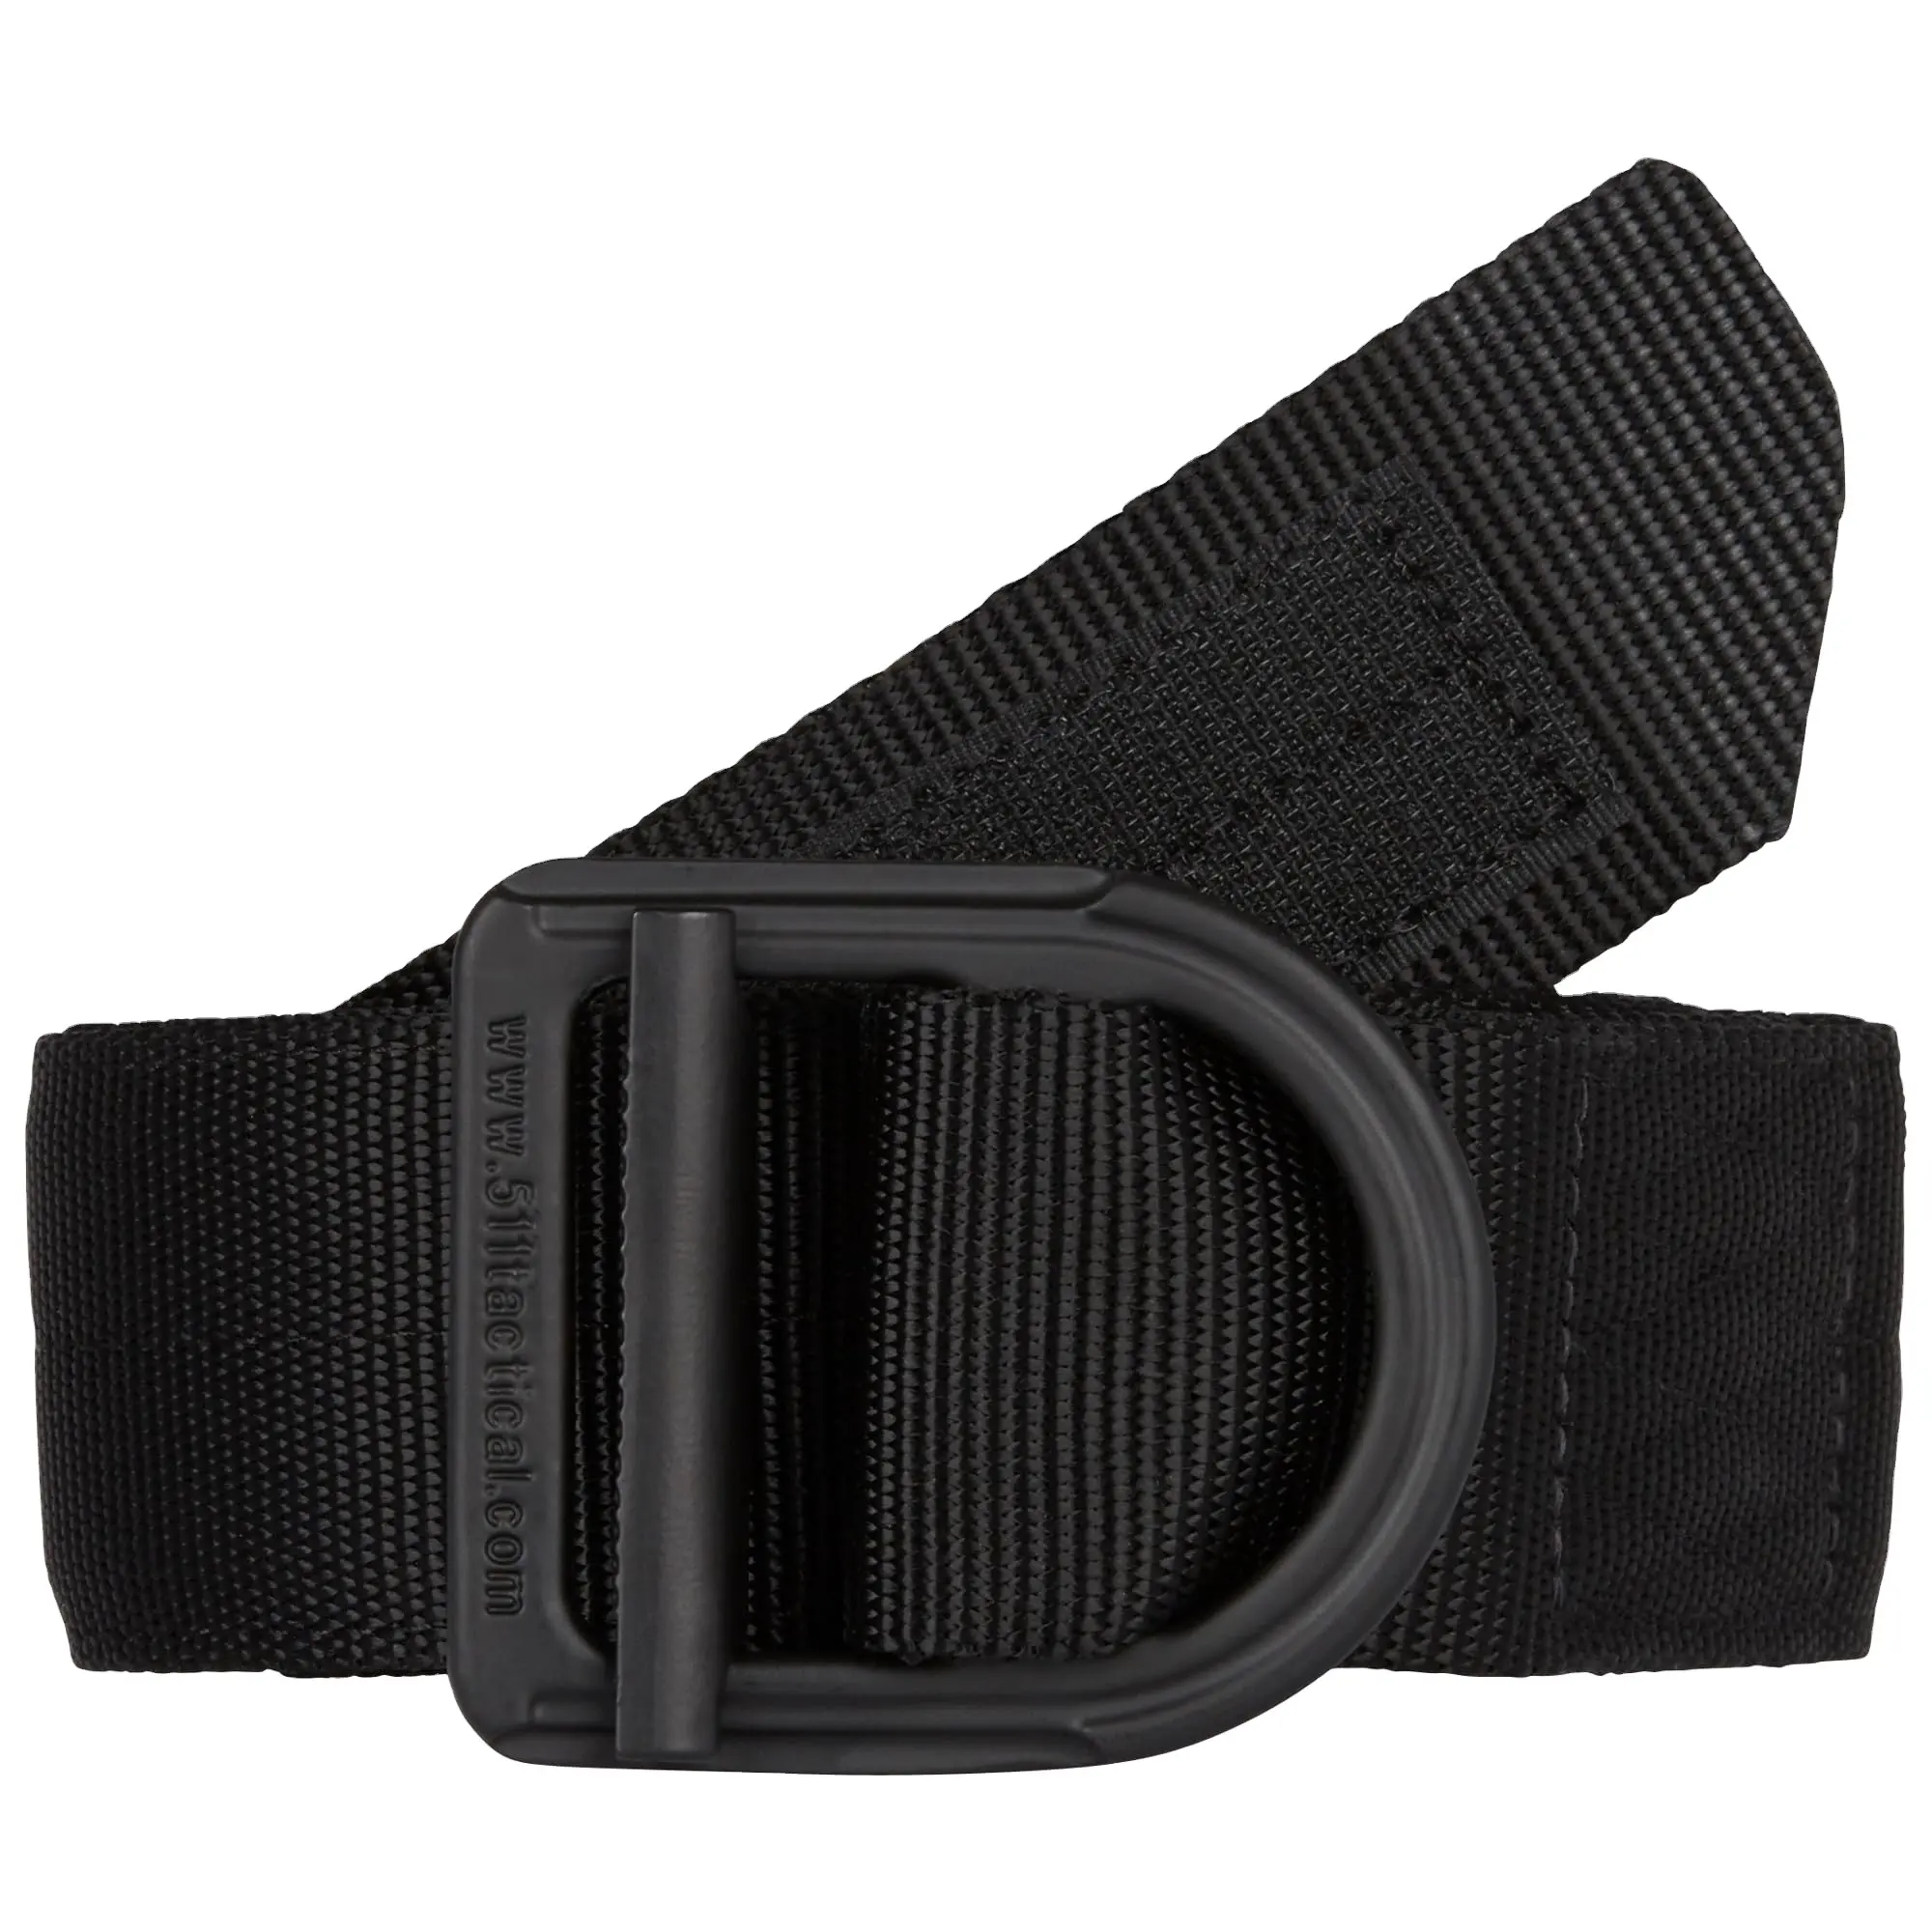 Cinturón de tela de lona Corte totalmente ajustable para adaptarse al cinturón de golf Hebilla superior abatible 511 cinturón